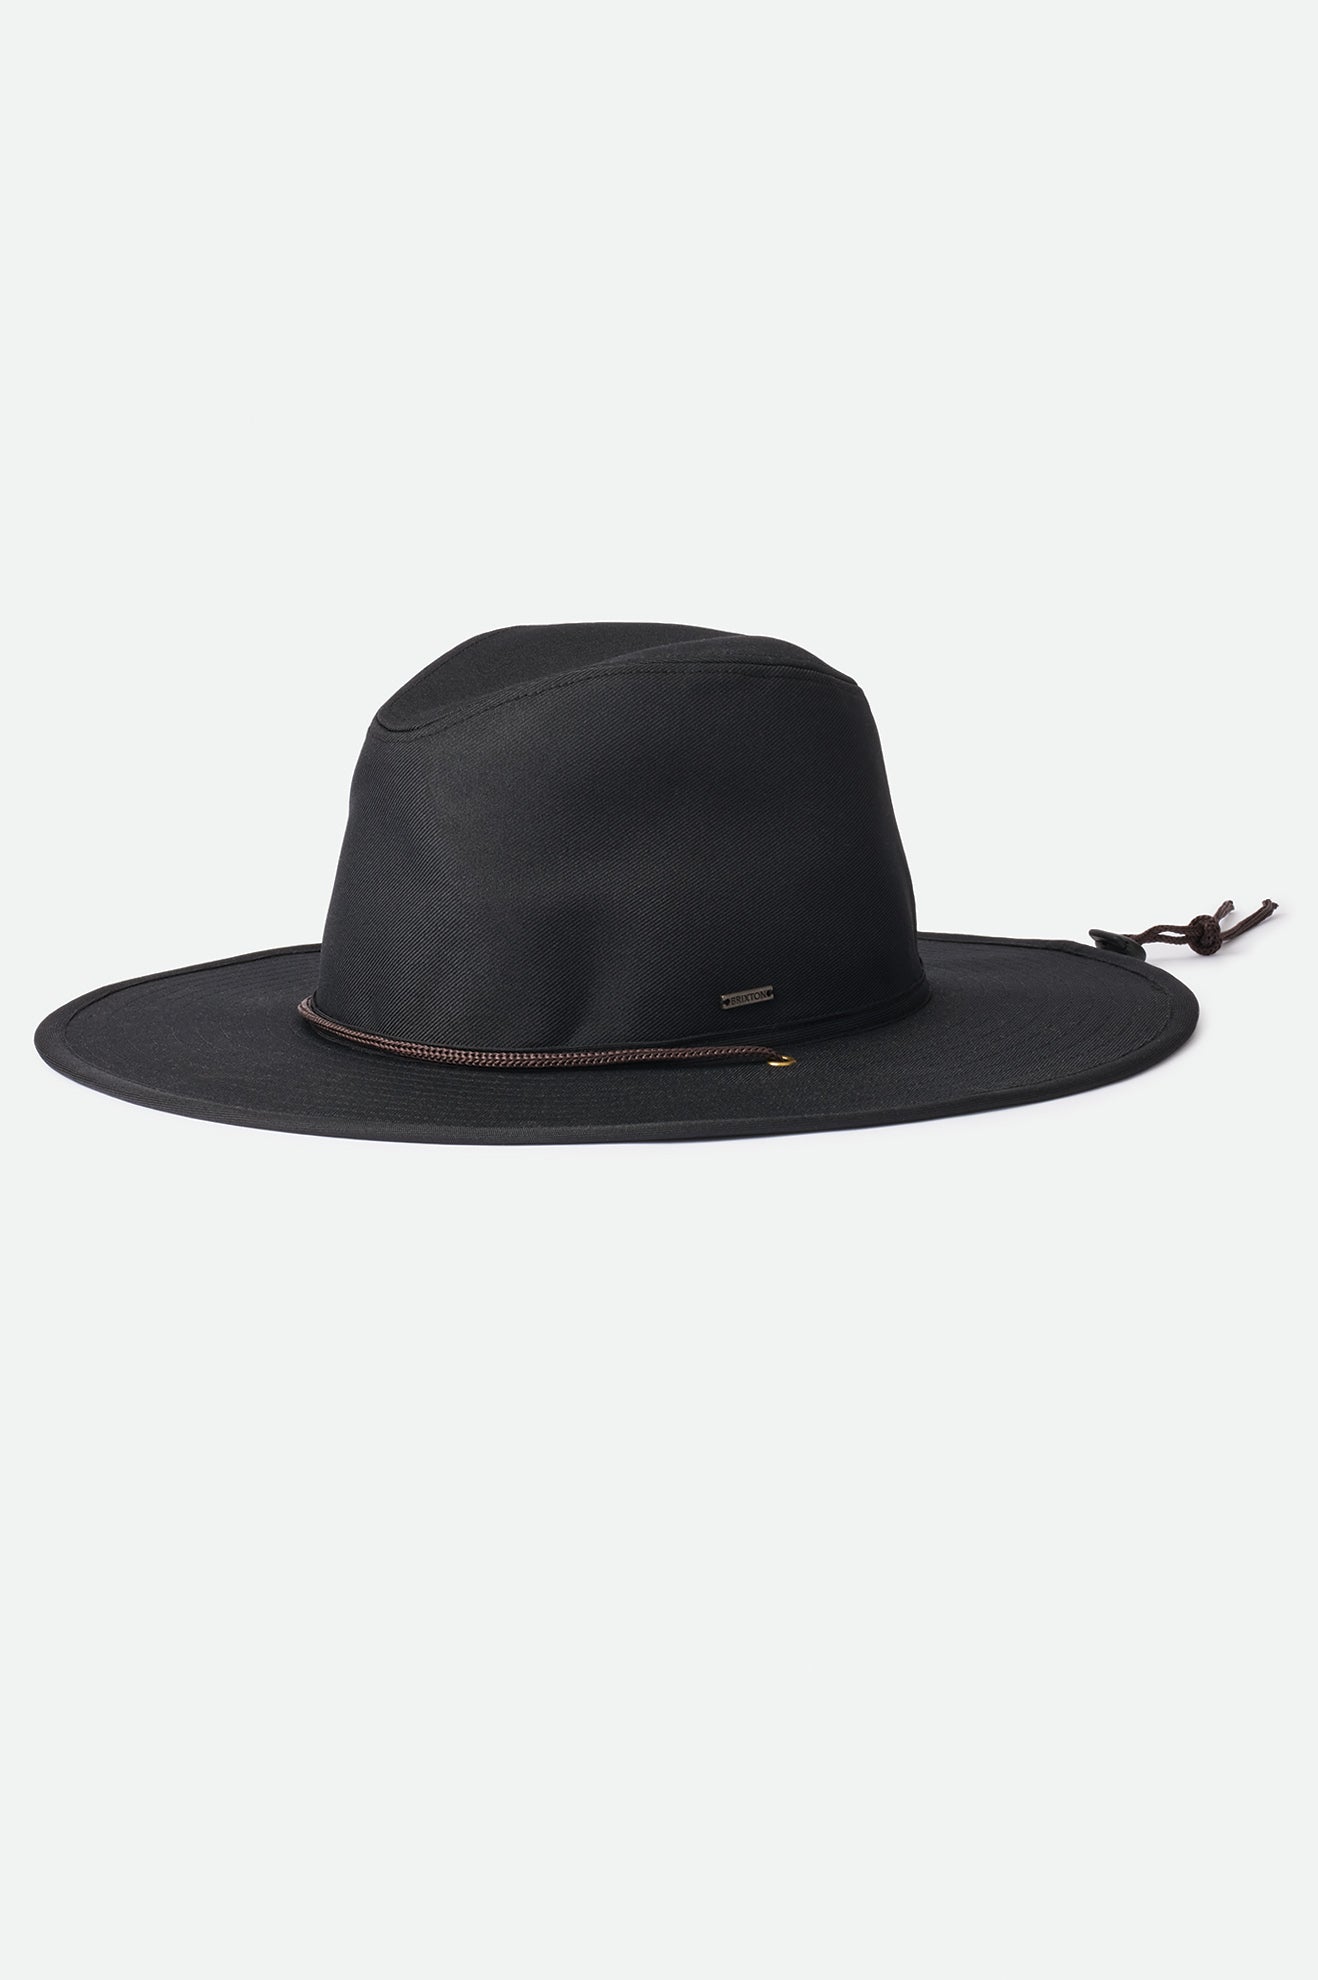 Gewend aan Waterig preambule Unisex Field Utility Hat in Black – Brixton